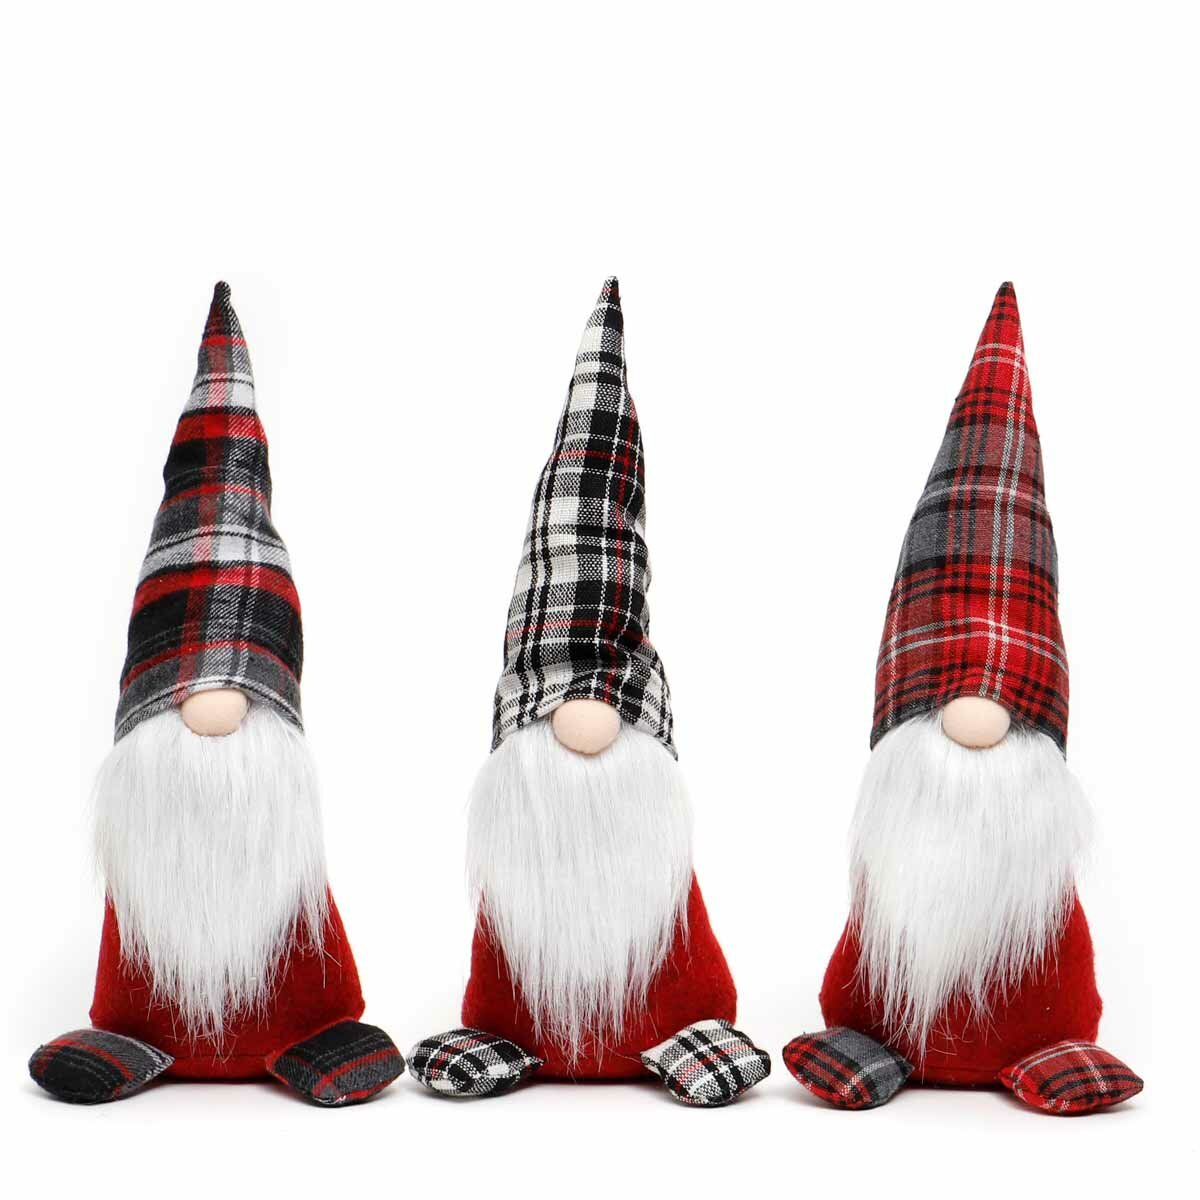 plush gnomes for sale